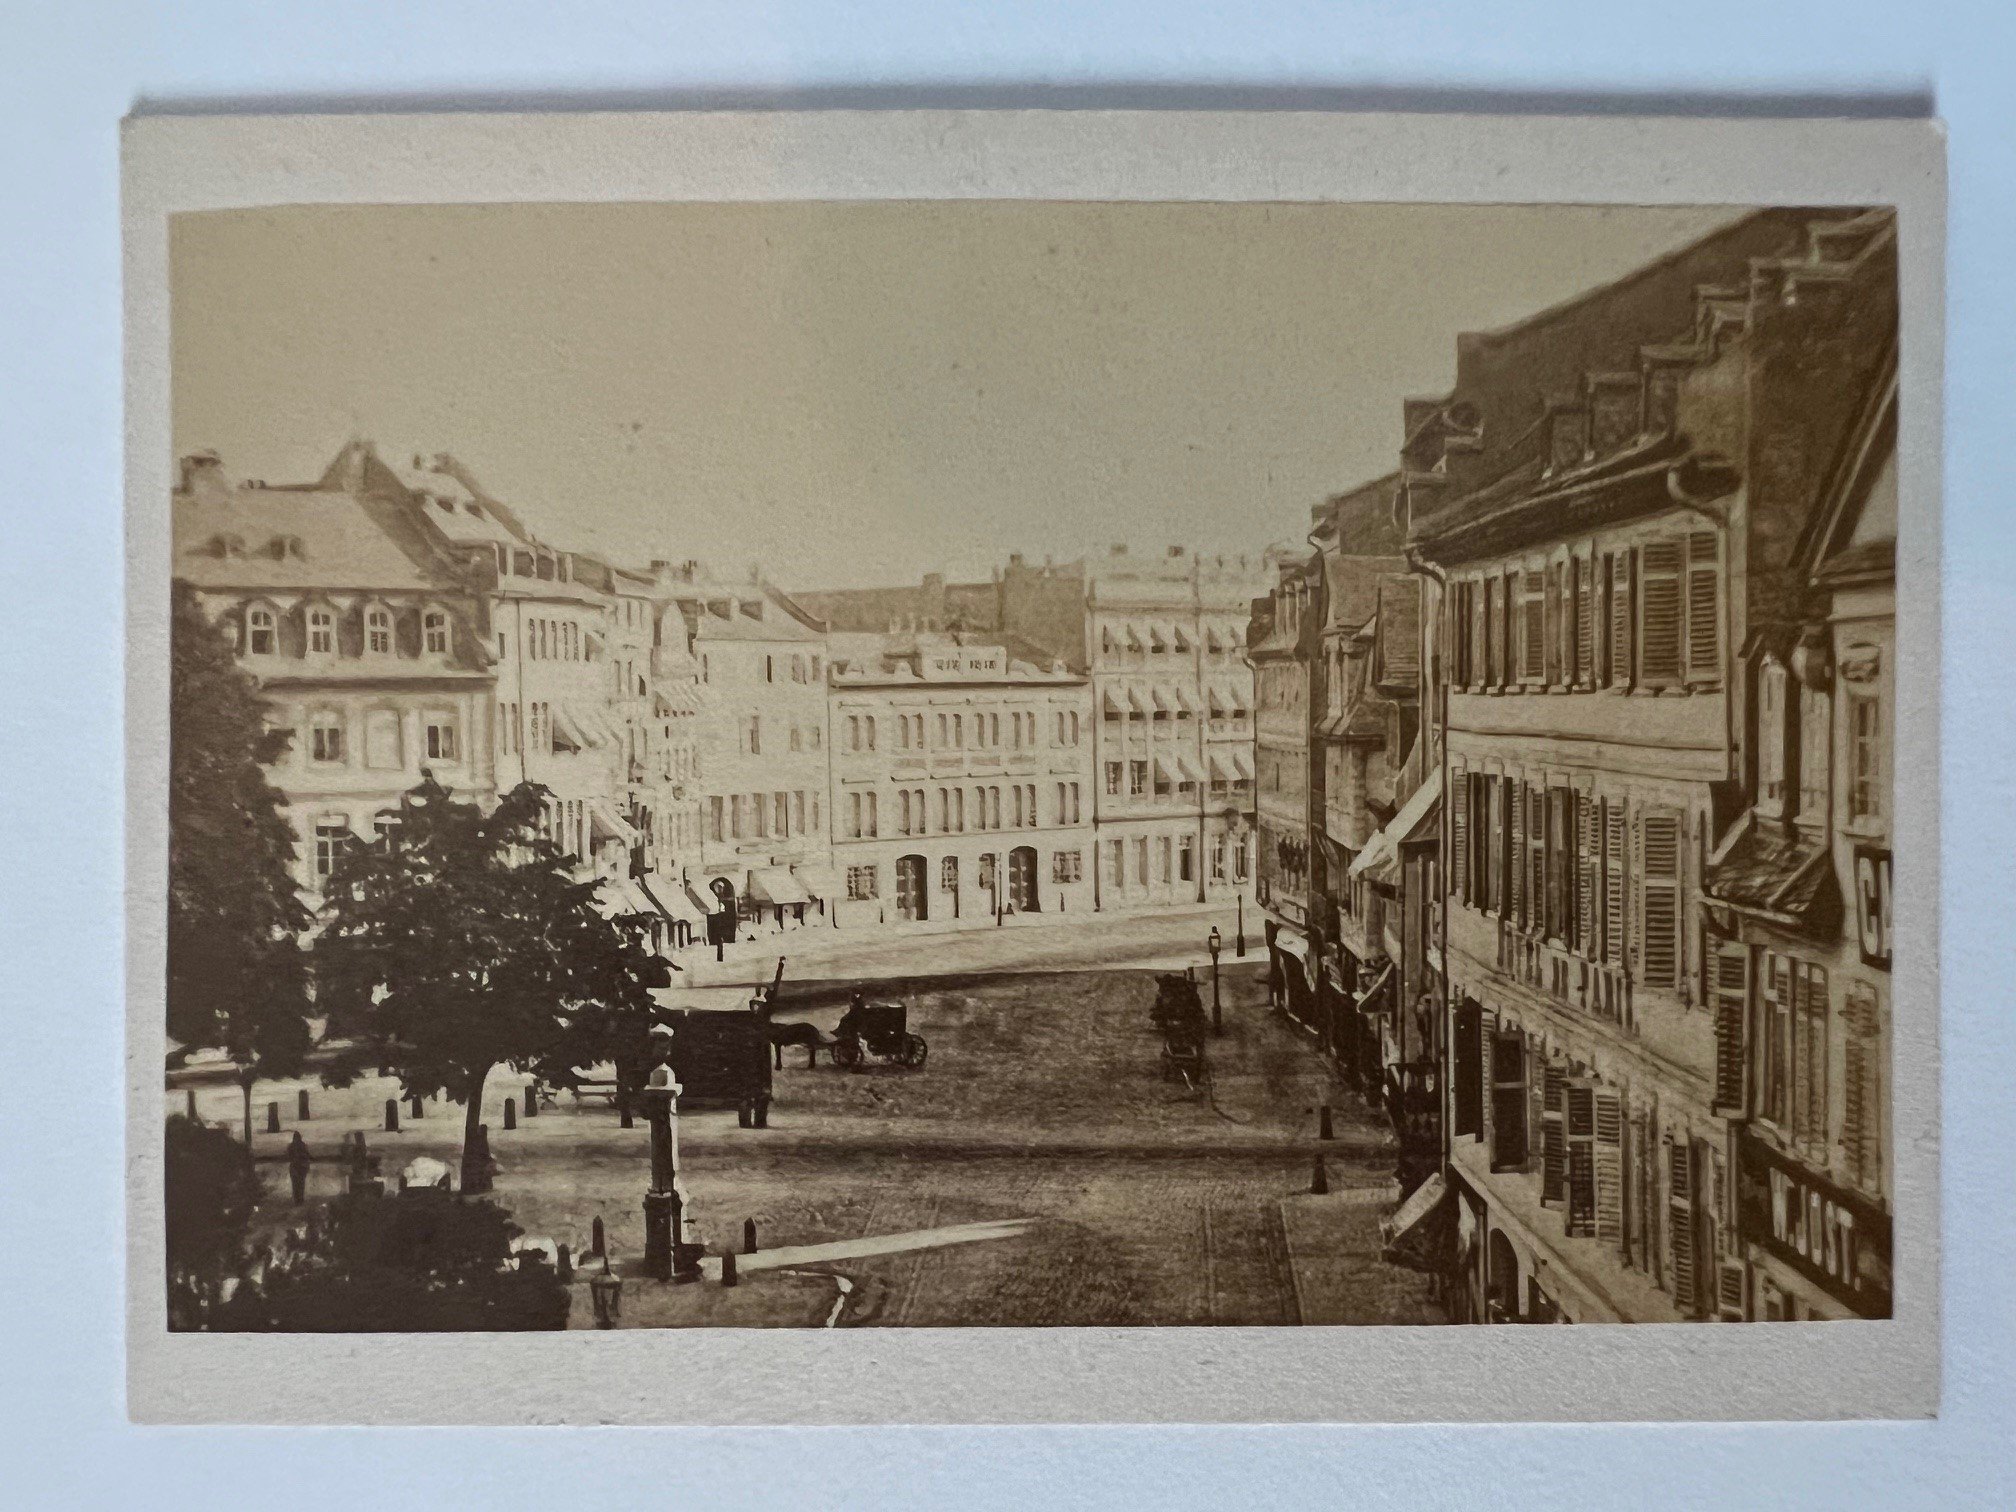 CdV, Unbekannter Fotograf, Zeil, ca. 1870 (Taunus-Rhein-Main - Regionalgeschichtliche Sammlung Dr. Stefan Naas CC BY-NC-SA)